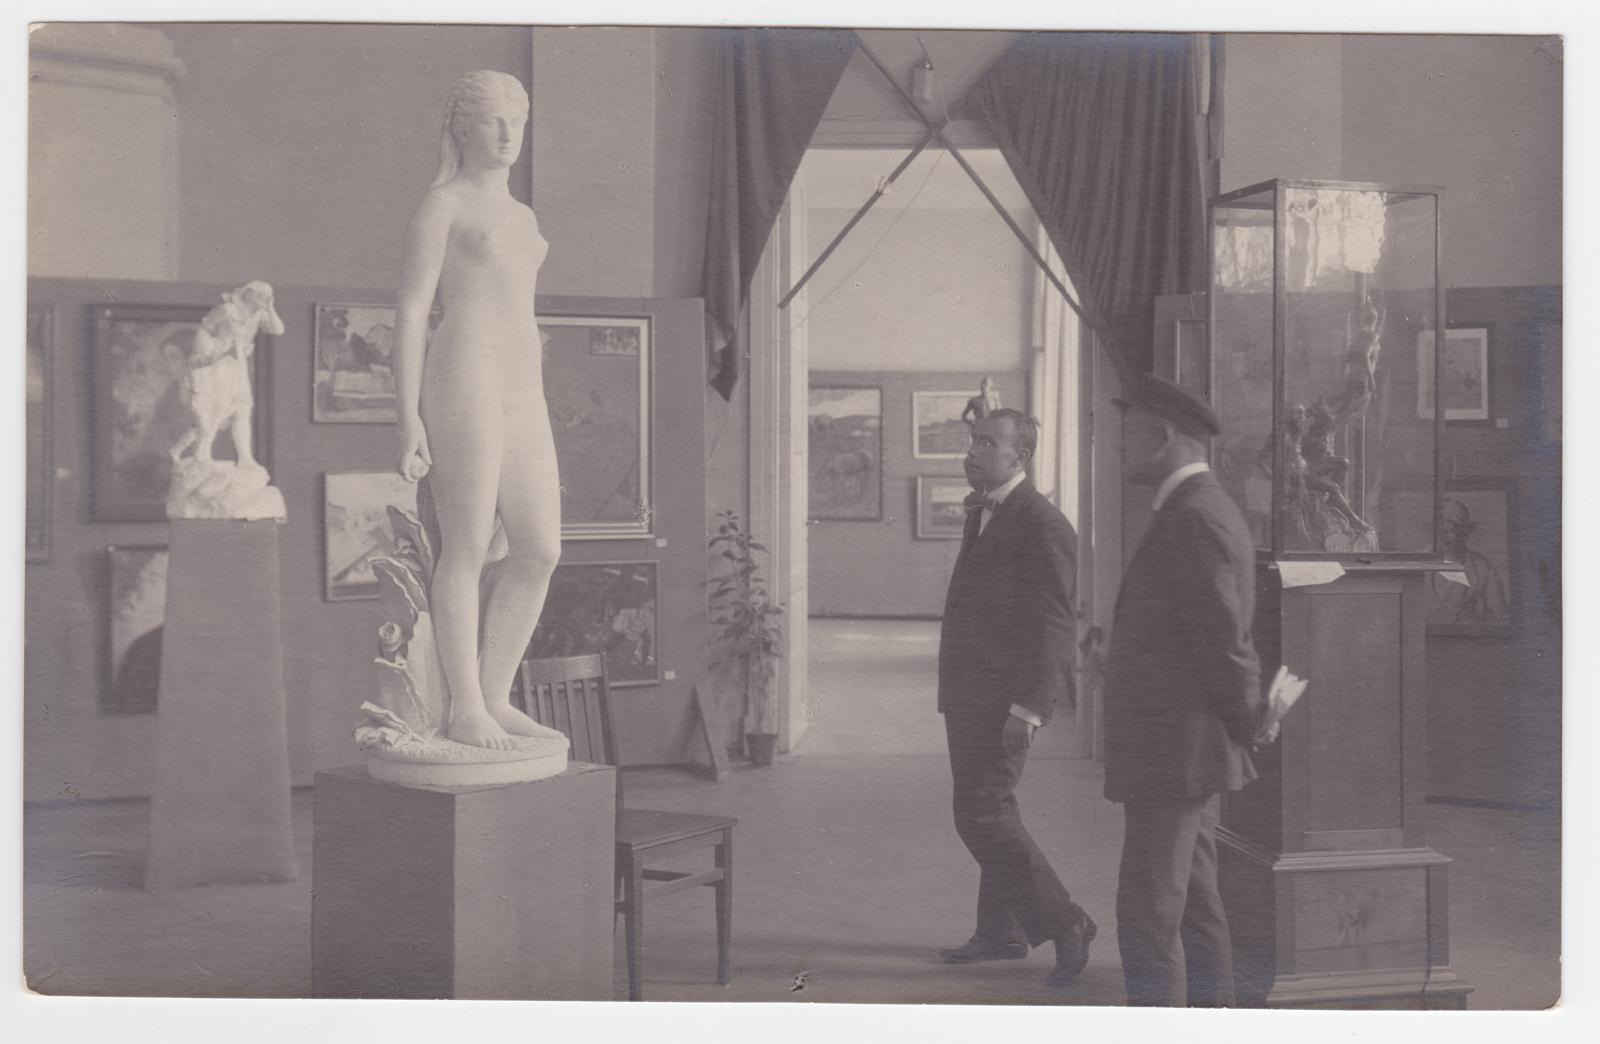 I Eesti kunsti ülevaatenäitus Tallinnas 1919. Pildil vasakul Hanno Kompus, paremal Nikolai Triik